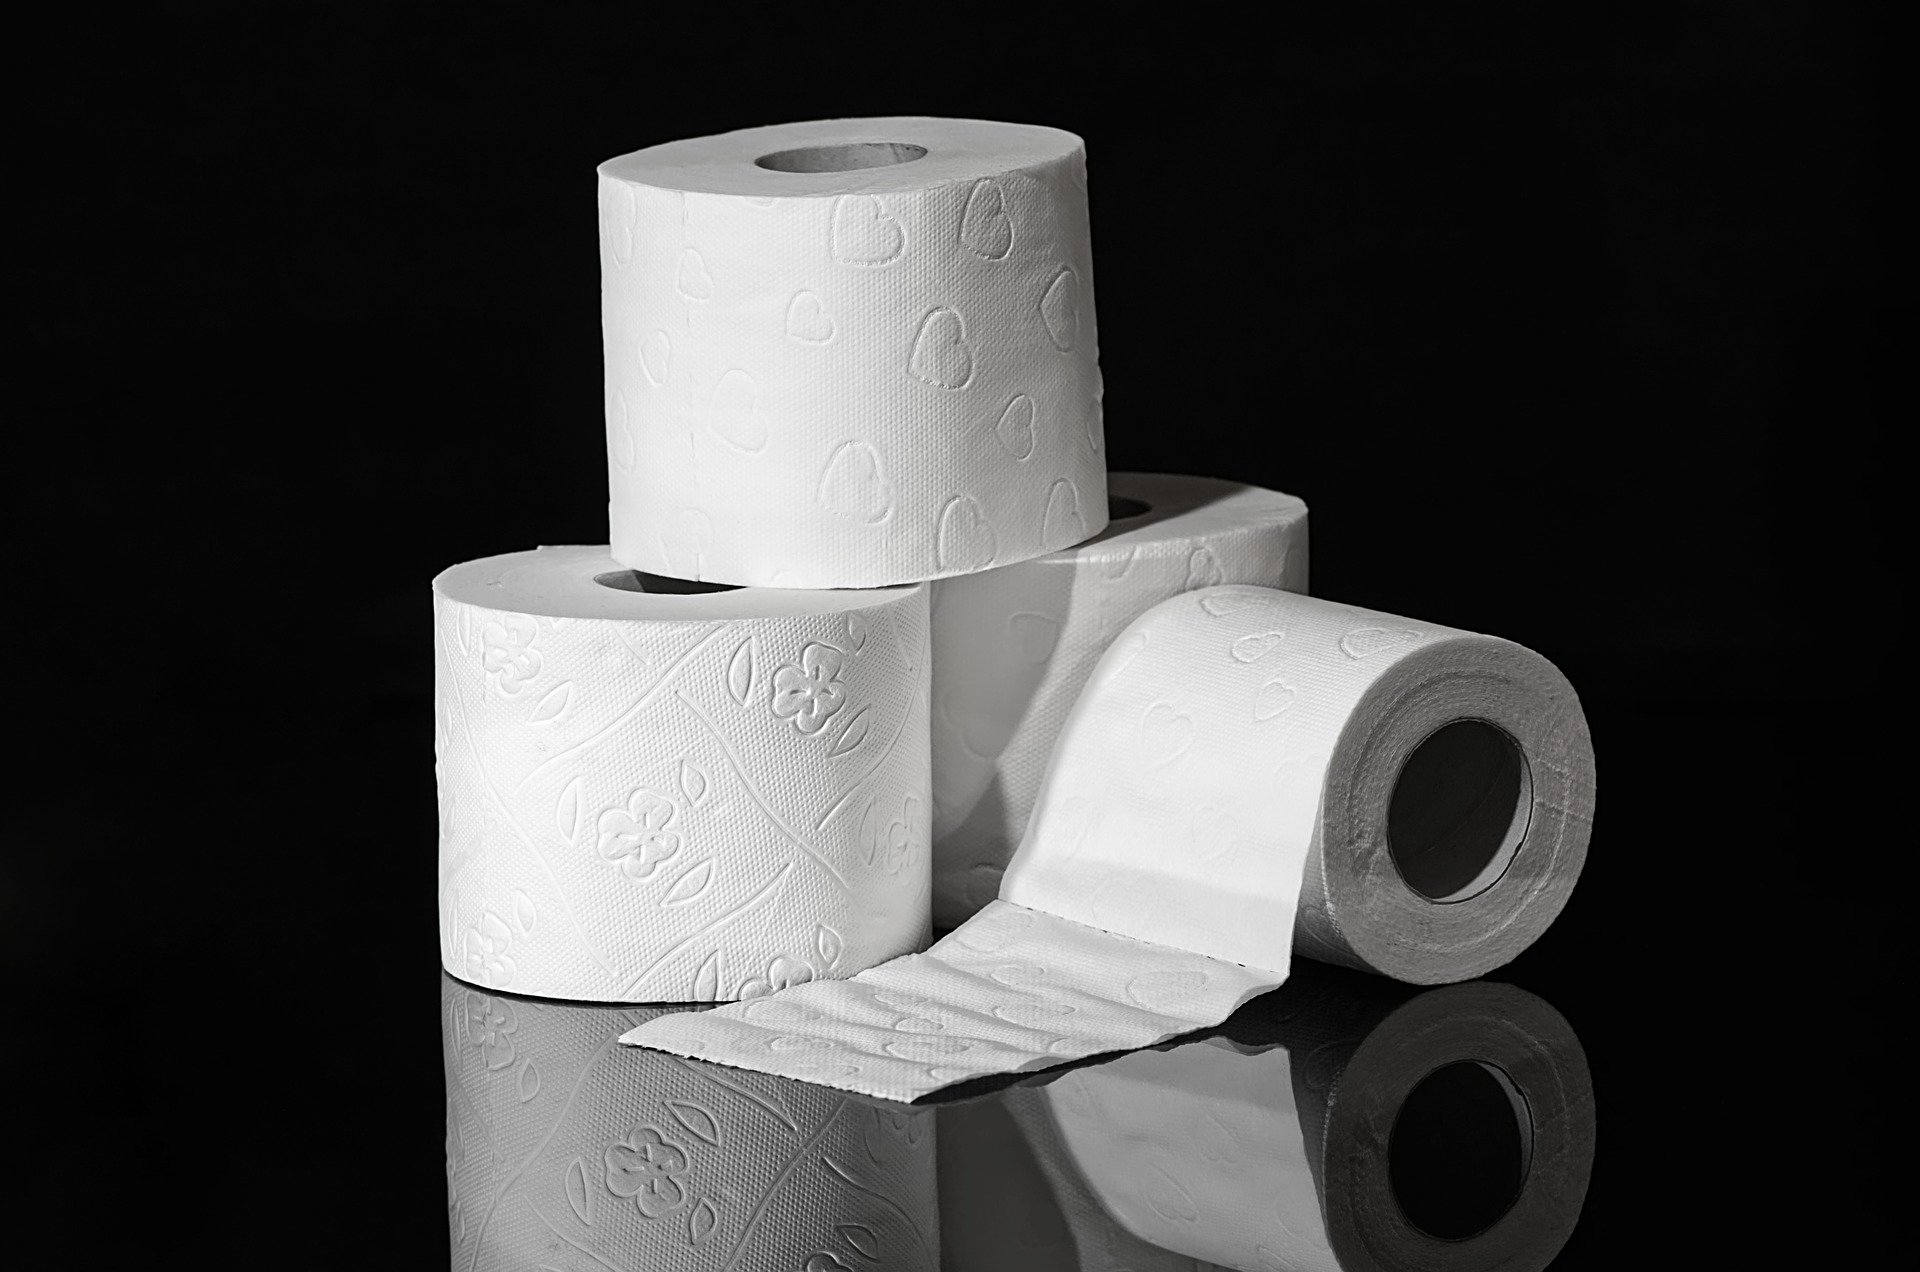 Jednoduchý trik, jak vybrat toaletní papír s nejdelší rolí